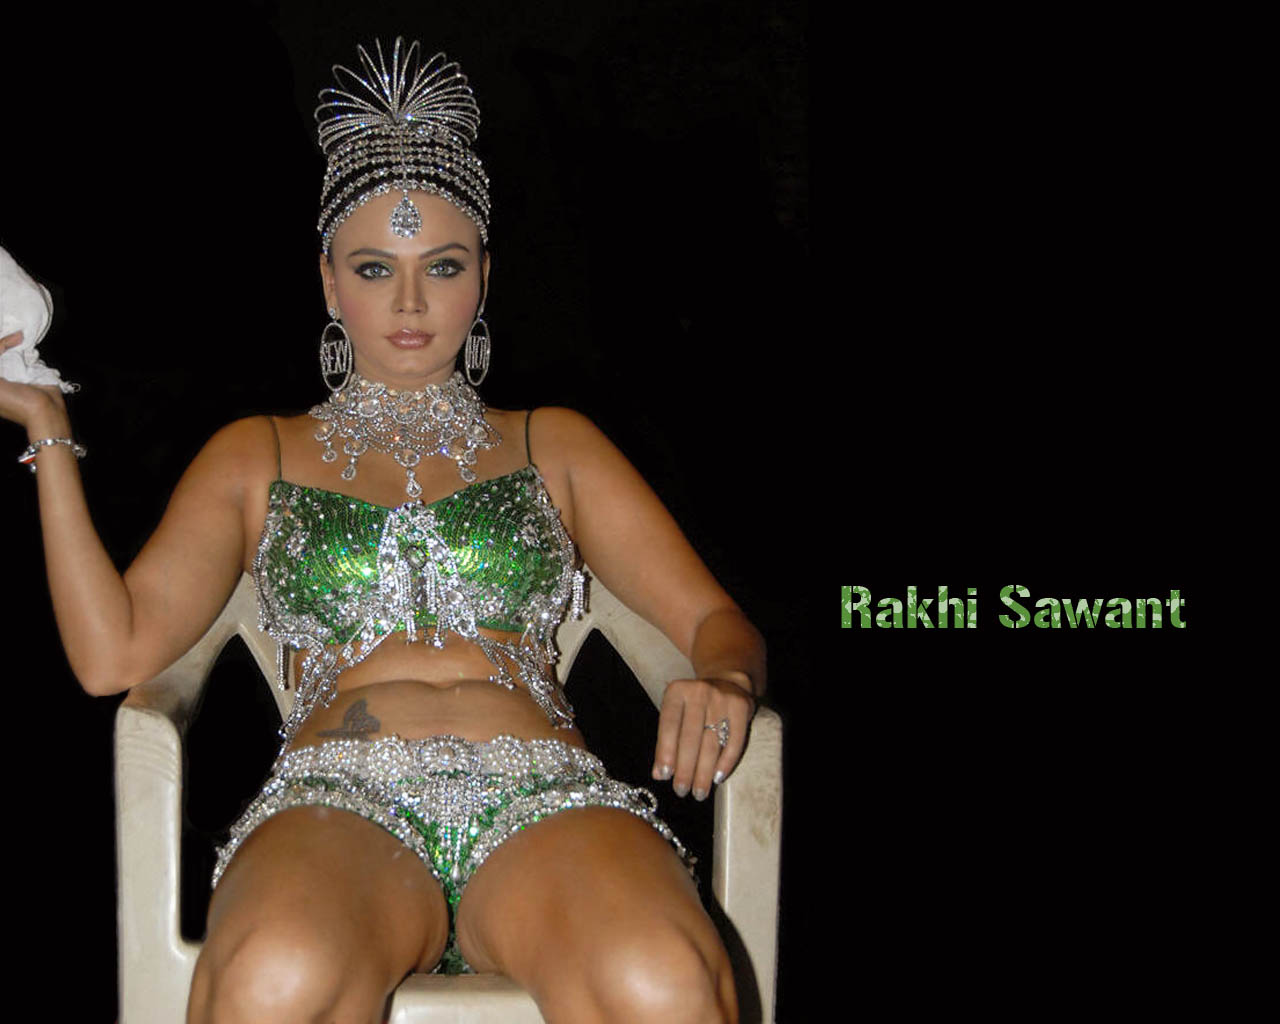 Rakhi sawant cock big dick pic - Pics and galleries